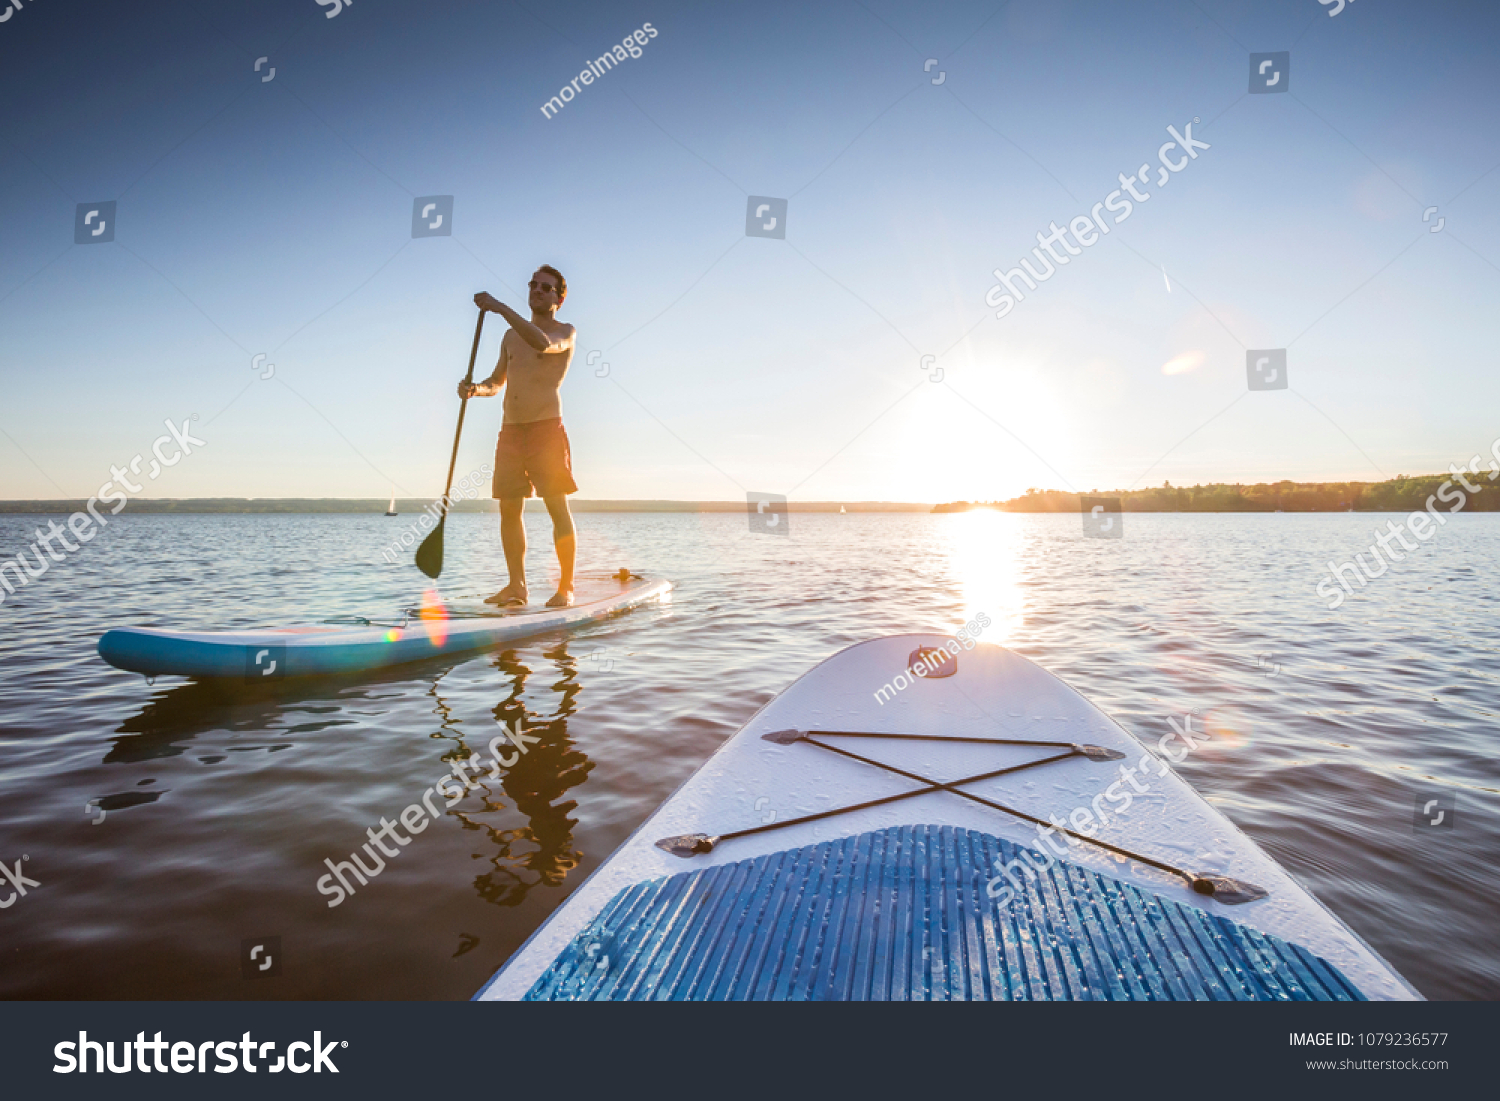 Standup paddler at the lake during sunset #1079236577